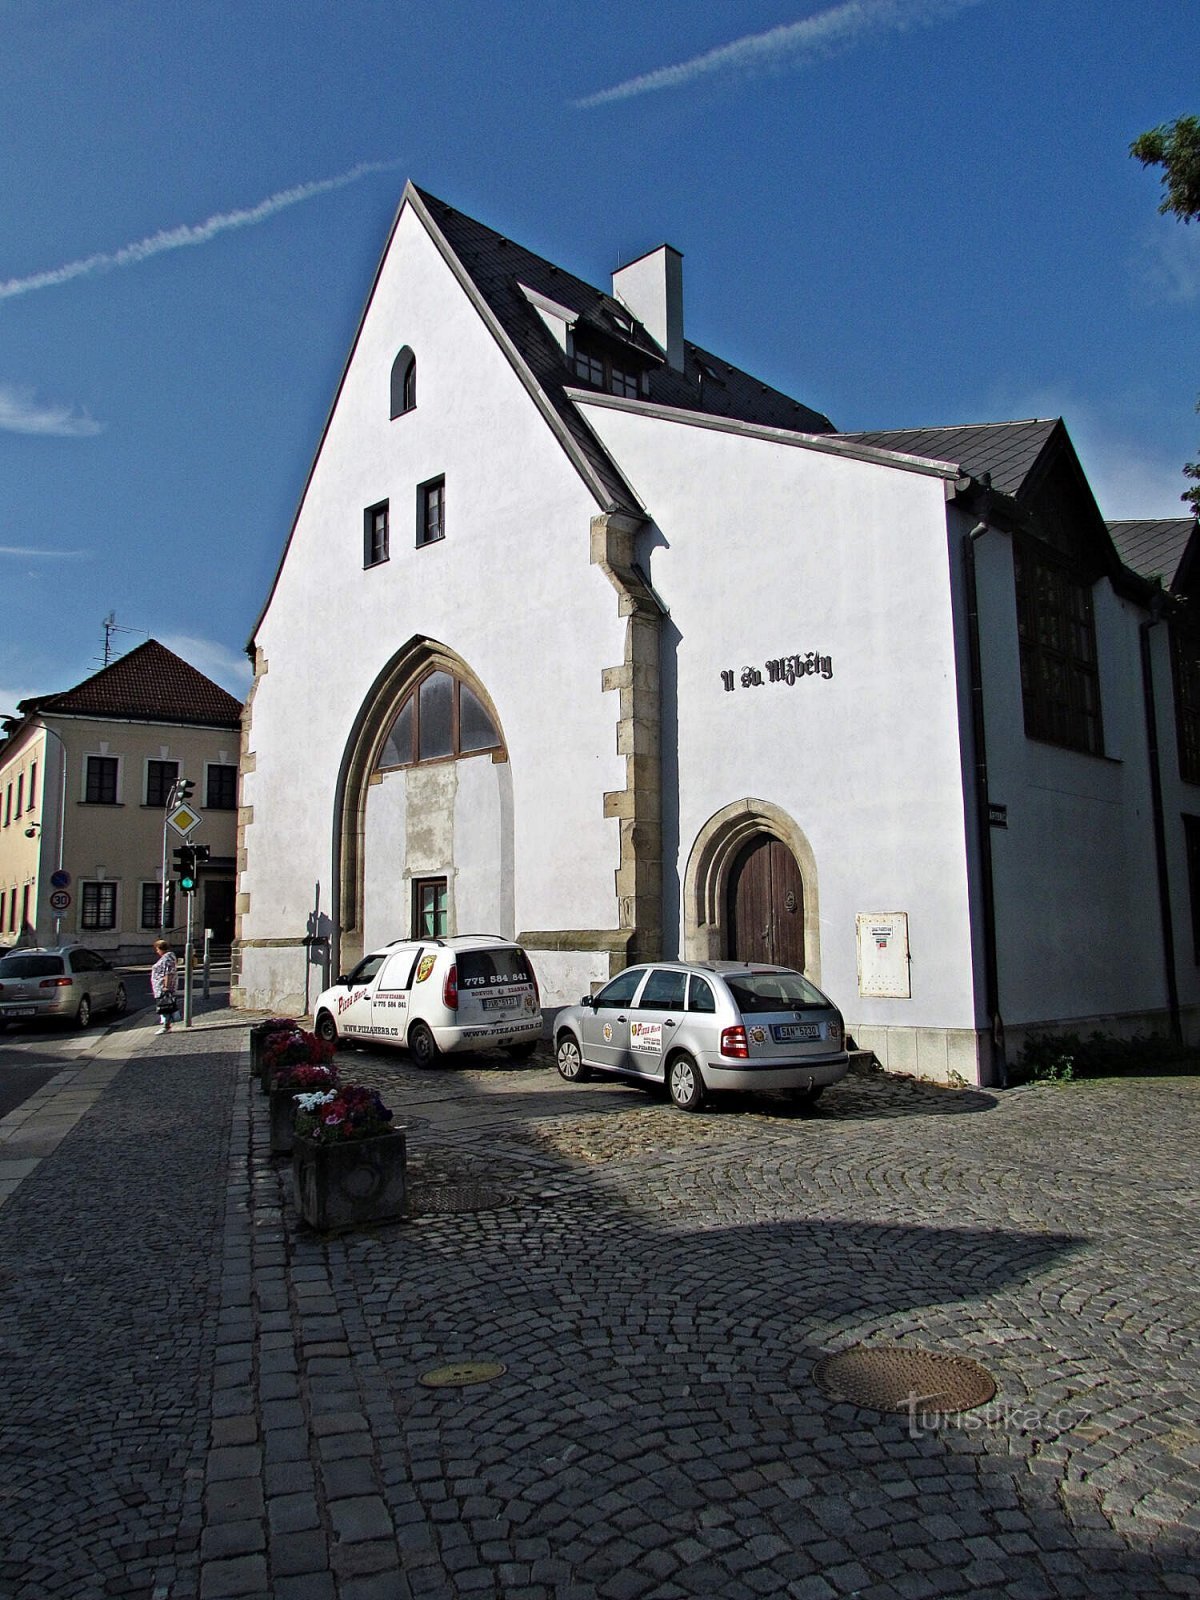 Jindřichův Hradec - nhà thờ Thánh Elizabeth bị hủy bỏ